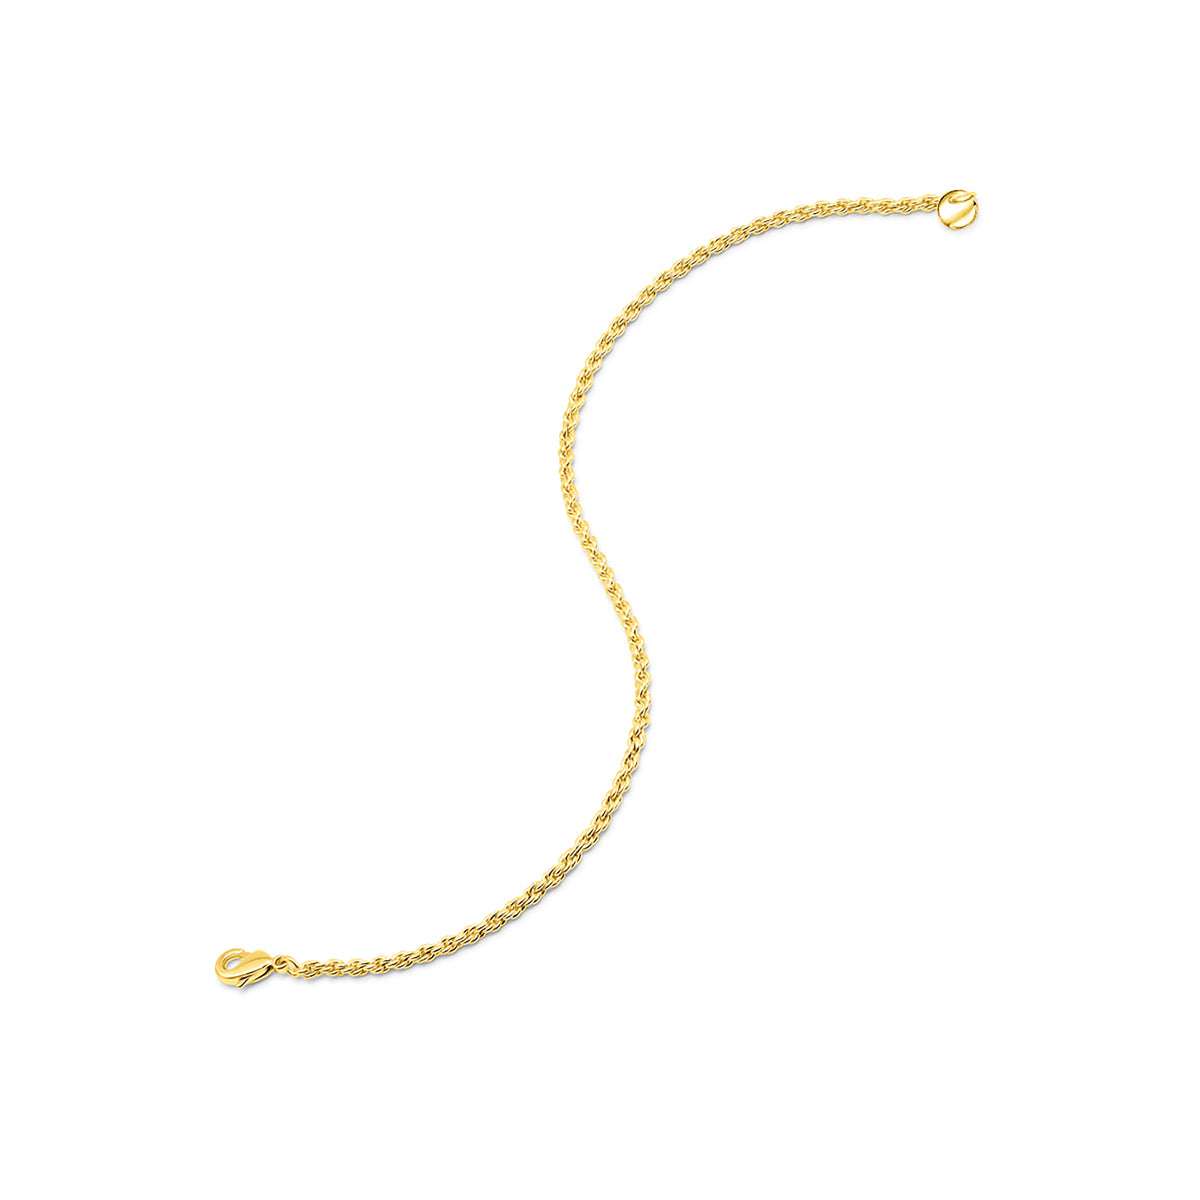 Unique gold rope chain bracelet